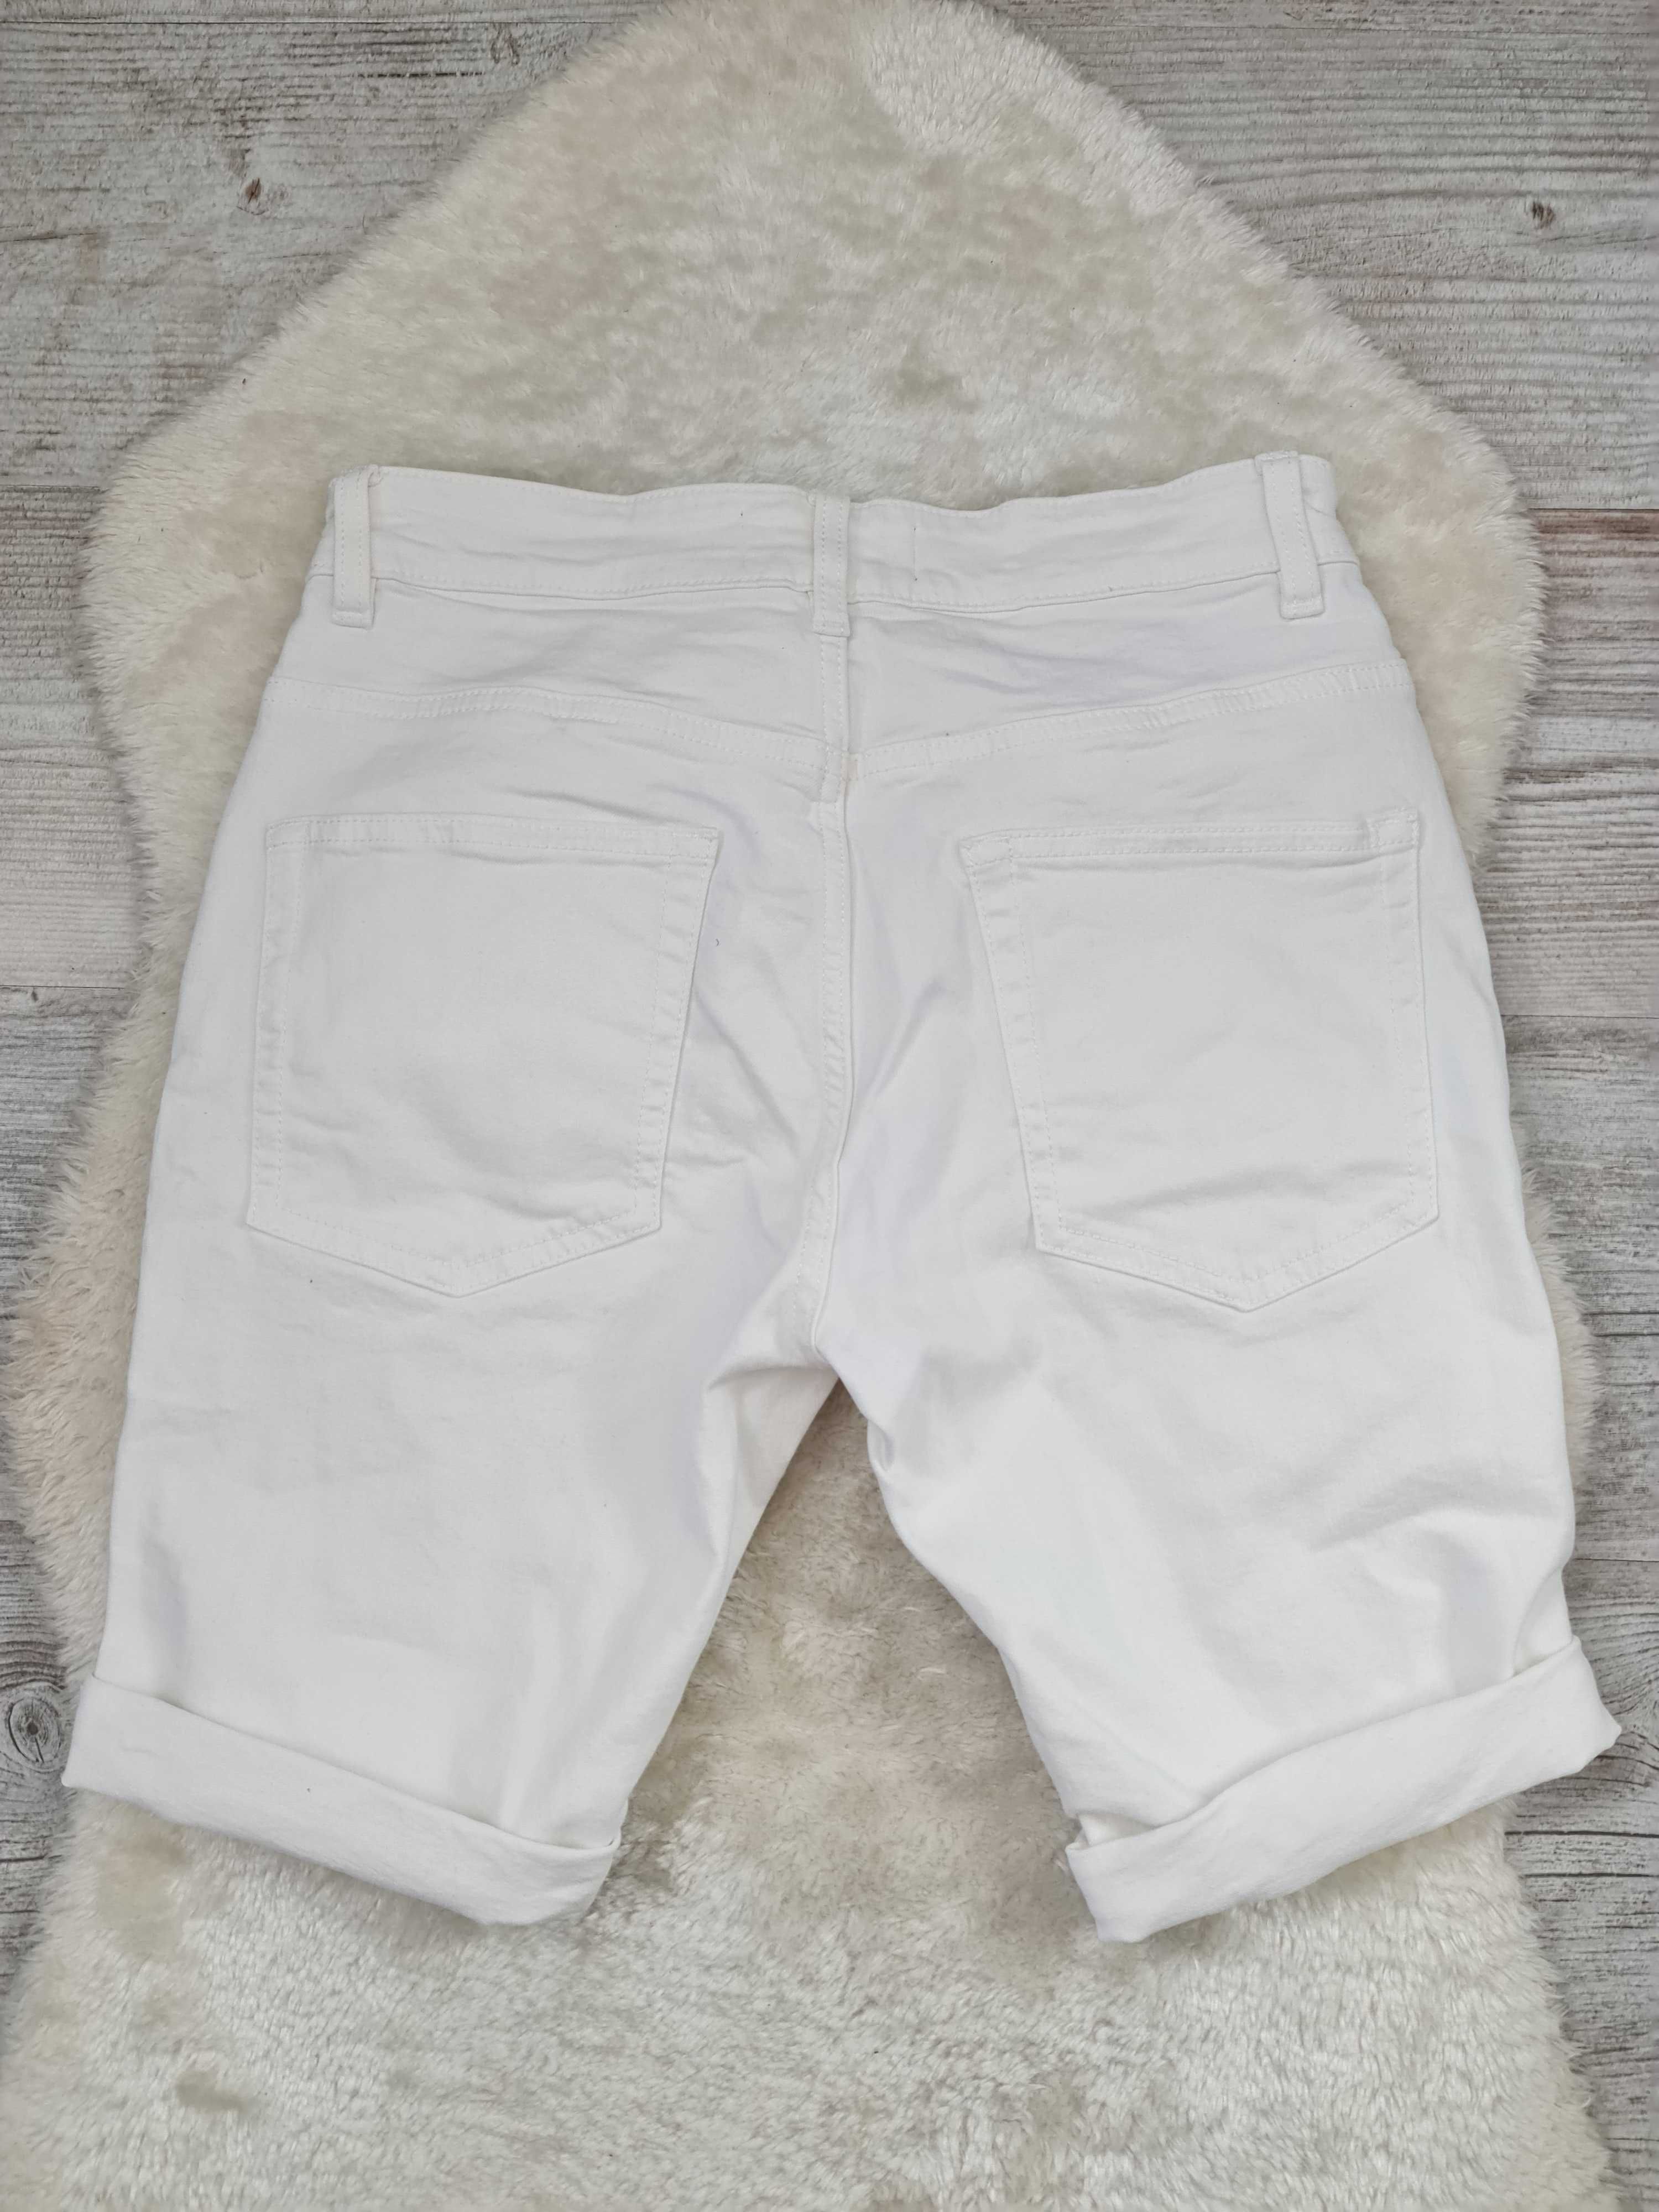 Białe Spodenki Jeans Next Szorty Dżinsowe Rozmiar S / M 30 / 38